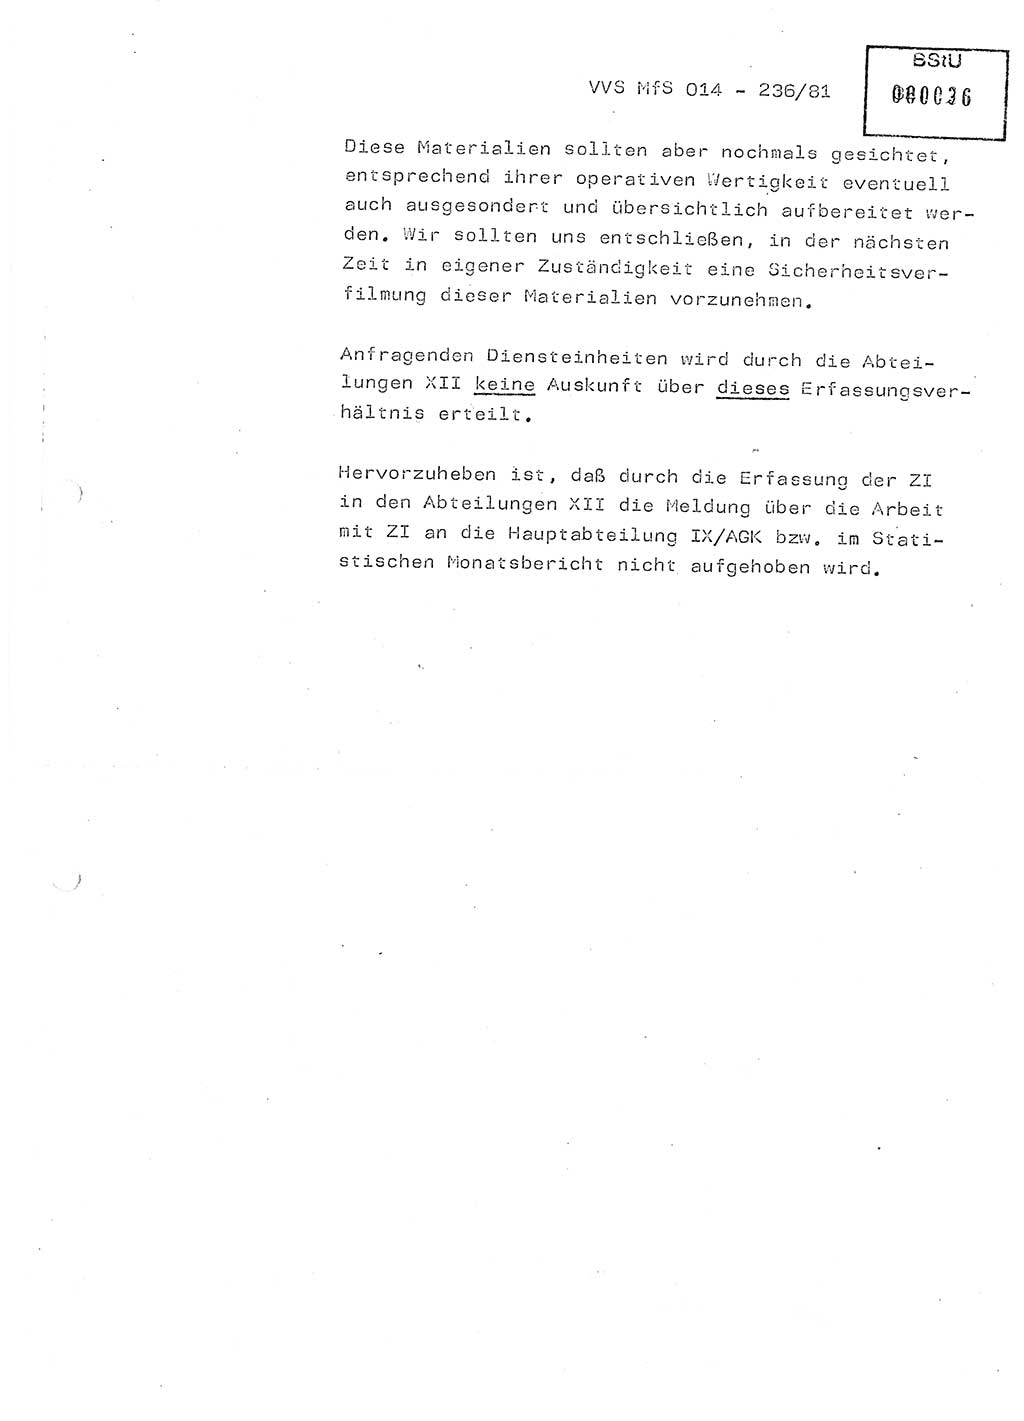 Thesen zum Einführungsvortrag für die Schulung zur Richtlinie Nr. 2/81 [zur Arbeit mit Zelleninformatoren (ZI)] des Genossen Minister (Generaloberst Erich Mielke), Ministerium für Staatssicherheit (MfS) [Deutsche Demokratische Republik (DDR)], Hauptabteilung (HA) Ⅸ, Vertrauliche Verschlußsache (VVS) 014-326/81, Berlin 1981, Seite 32 (Th. Sch. RL 2/81 MfS DDR HA Ⅸ VVS 014-326/81 1981, S. 32)